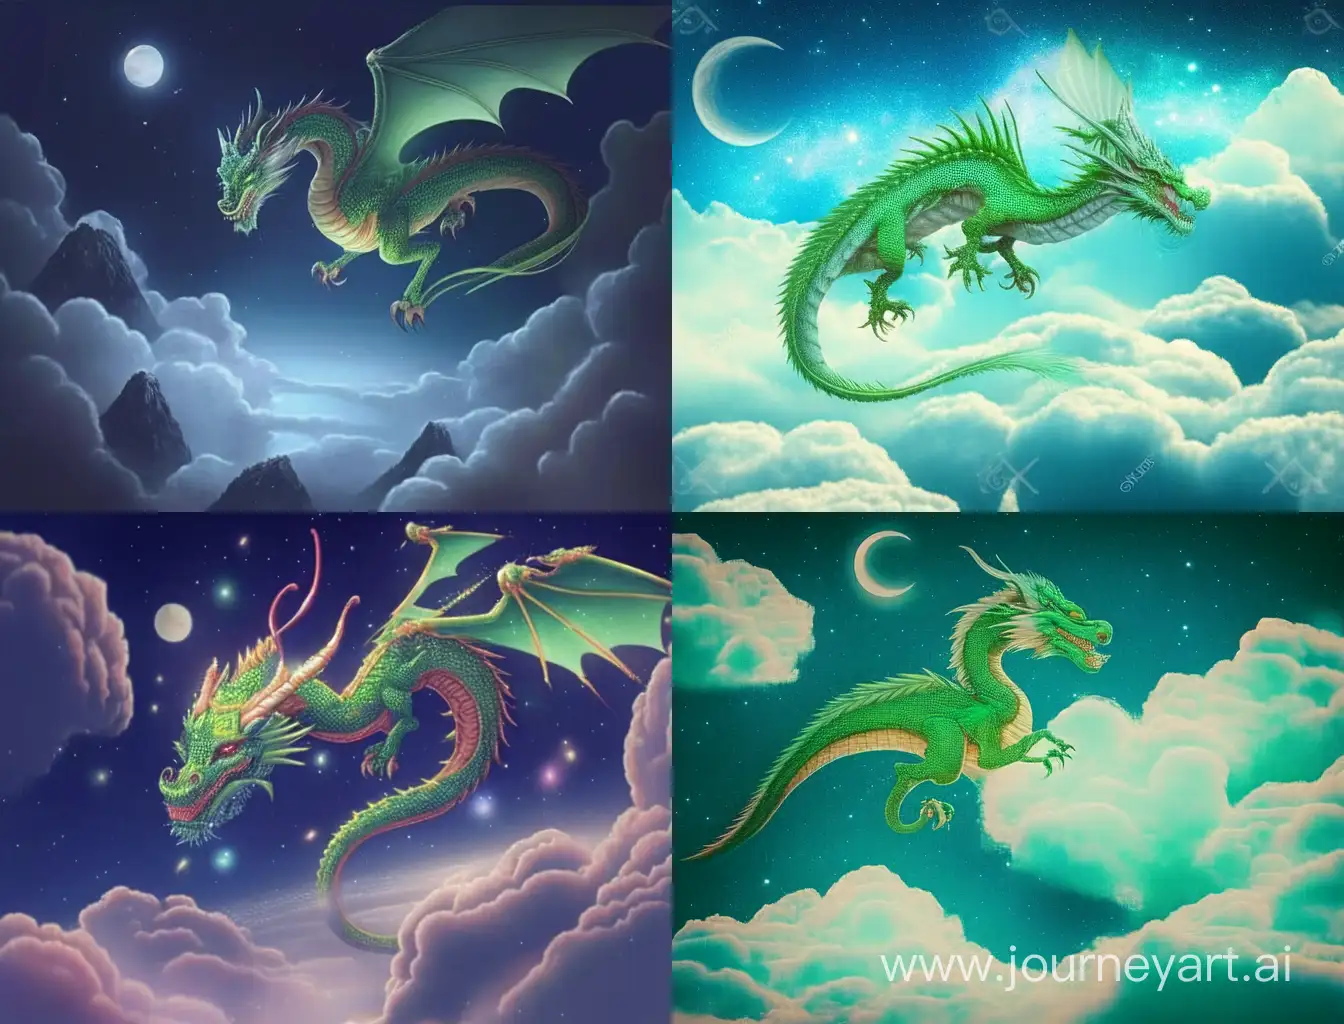 Зеленый китайский дракон летит над облаками, ночное небо, звезды, сказочно,  прекрасно, карандашный рисунок, реалистично, ярко, детальная прорисовка